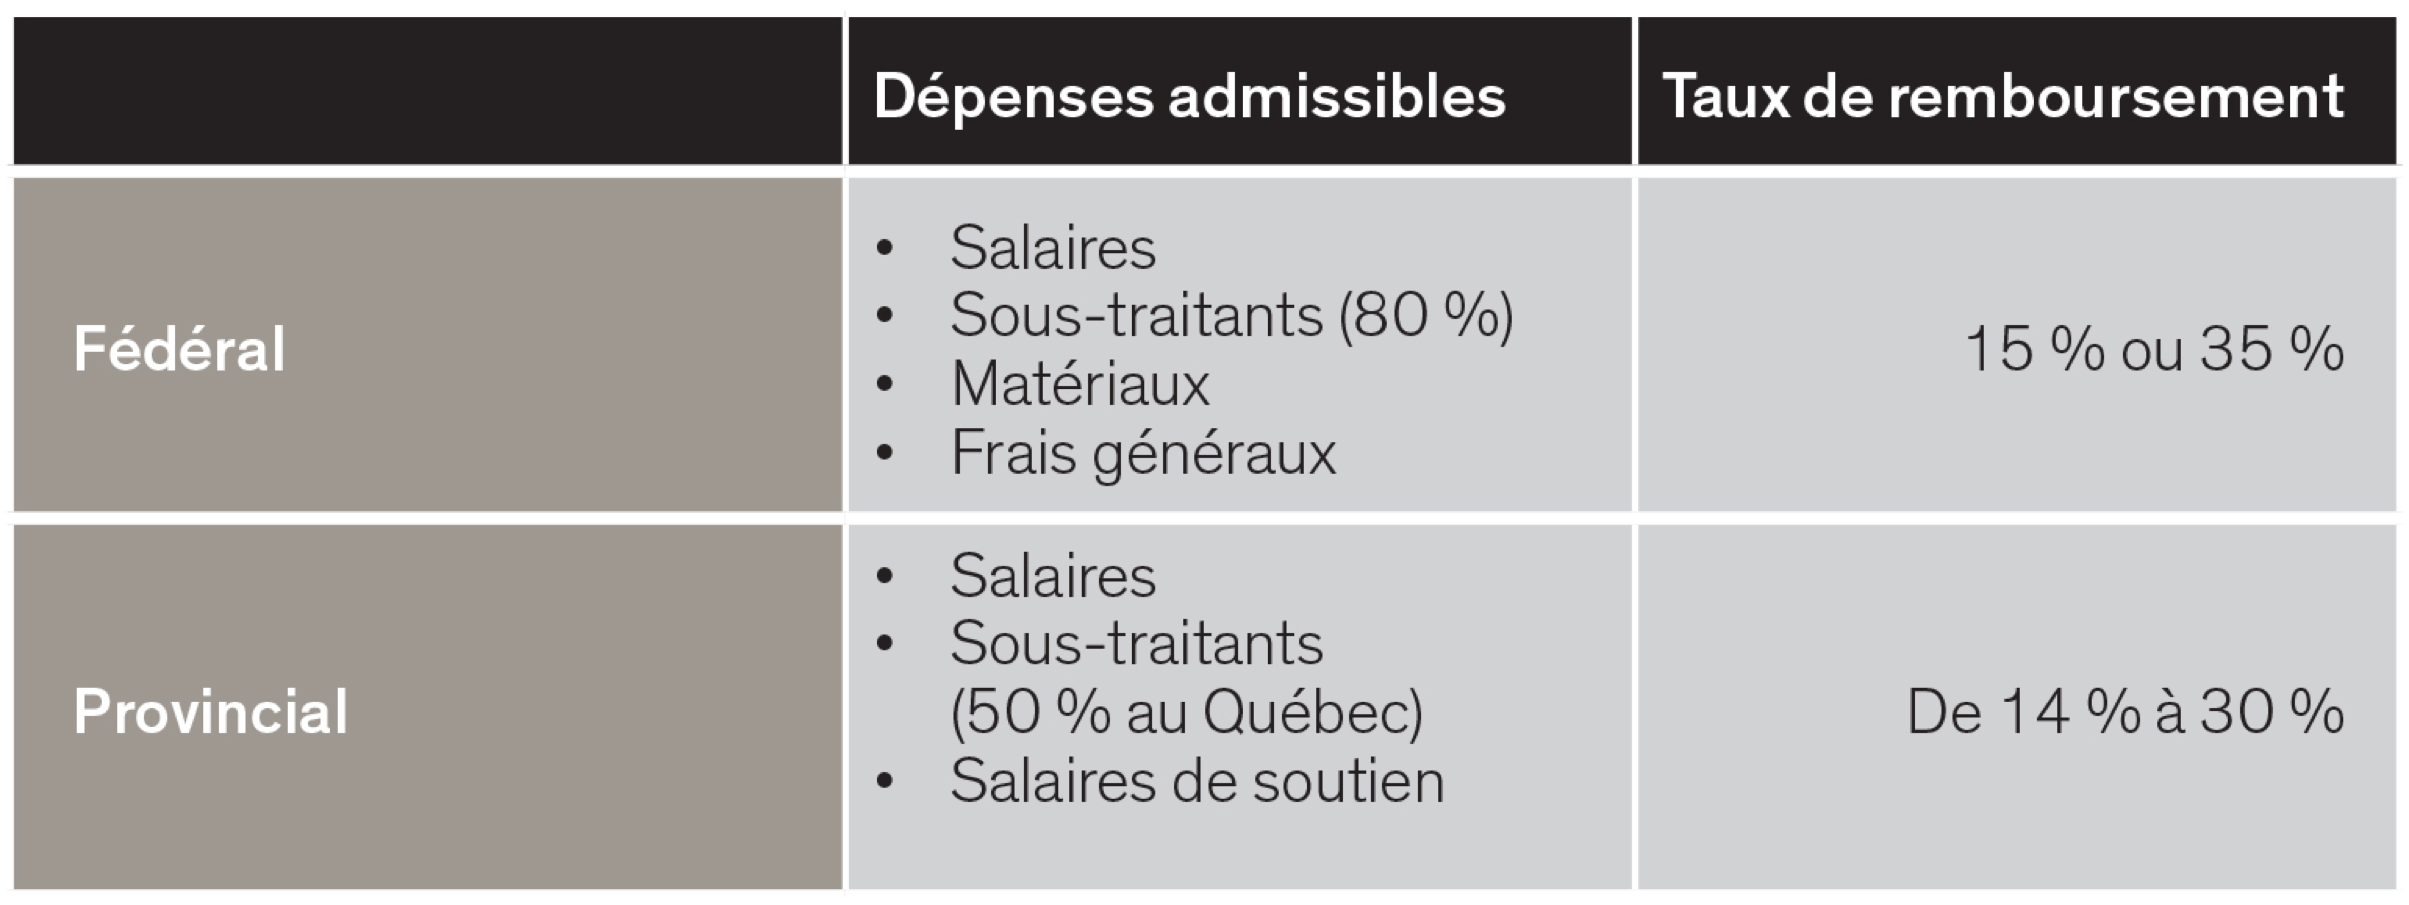 Dépenses admissibles et taux de remboursement provincial et fédéral - graphique 